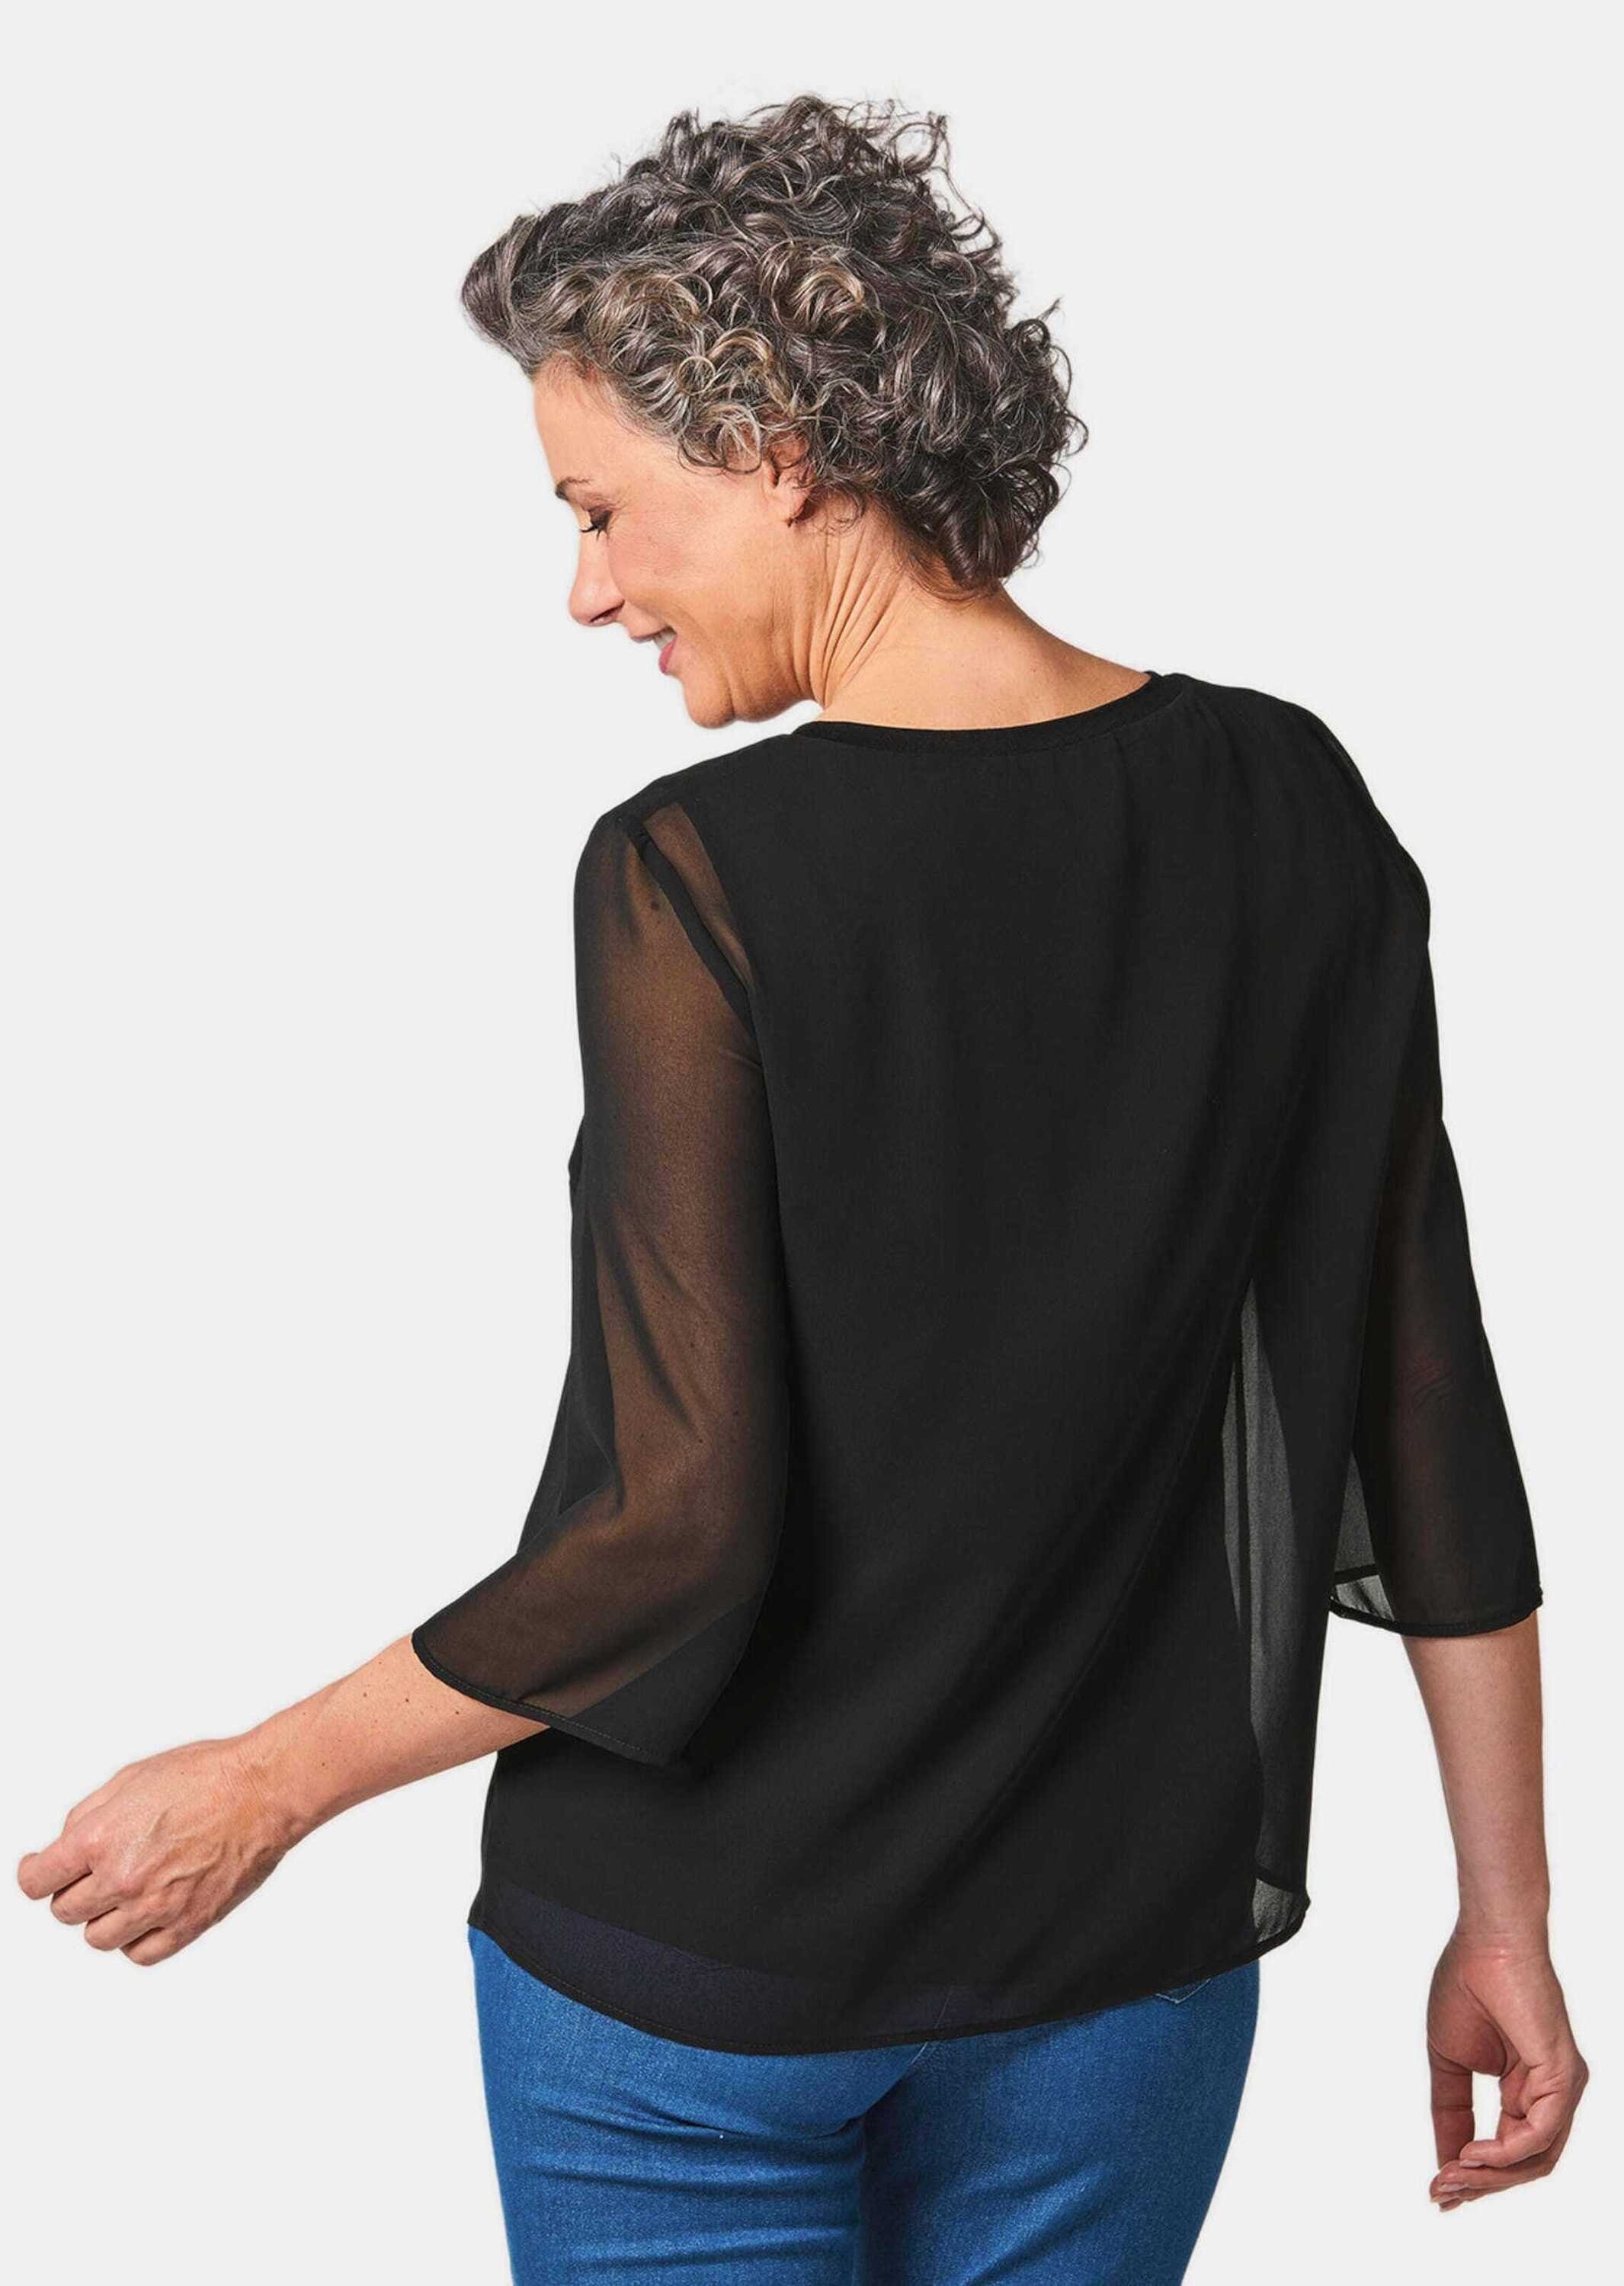 Stilvolles, GOLDNER Blusenshirt gedoppeltes schwarz Kurzgröße: Shirtbluse